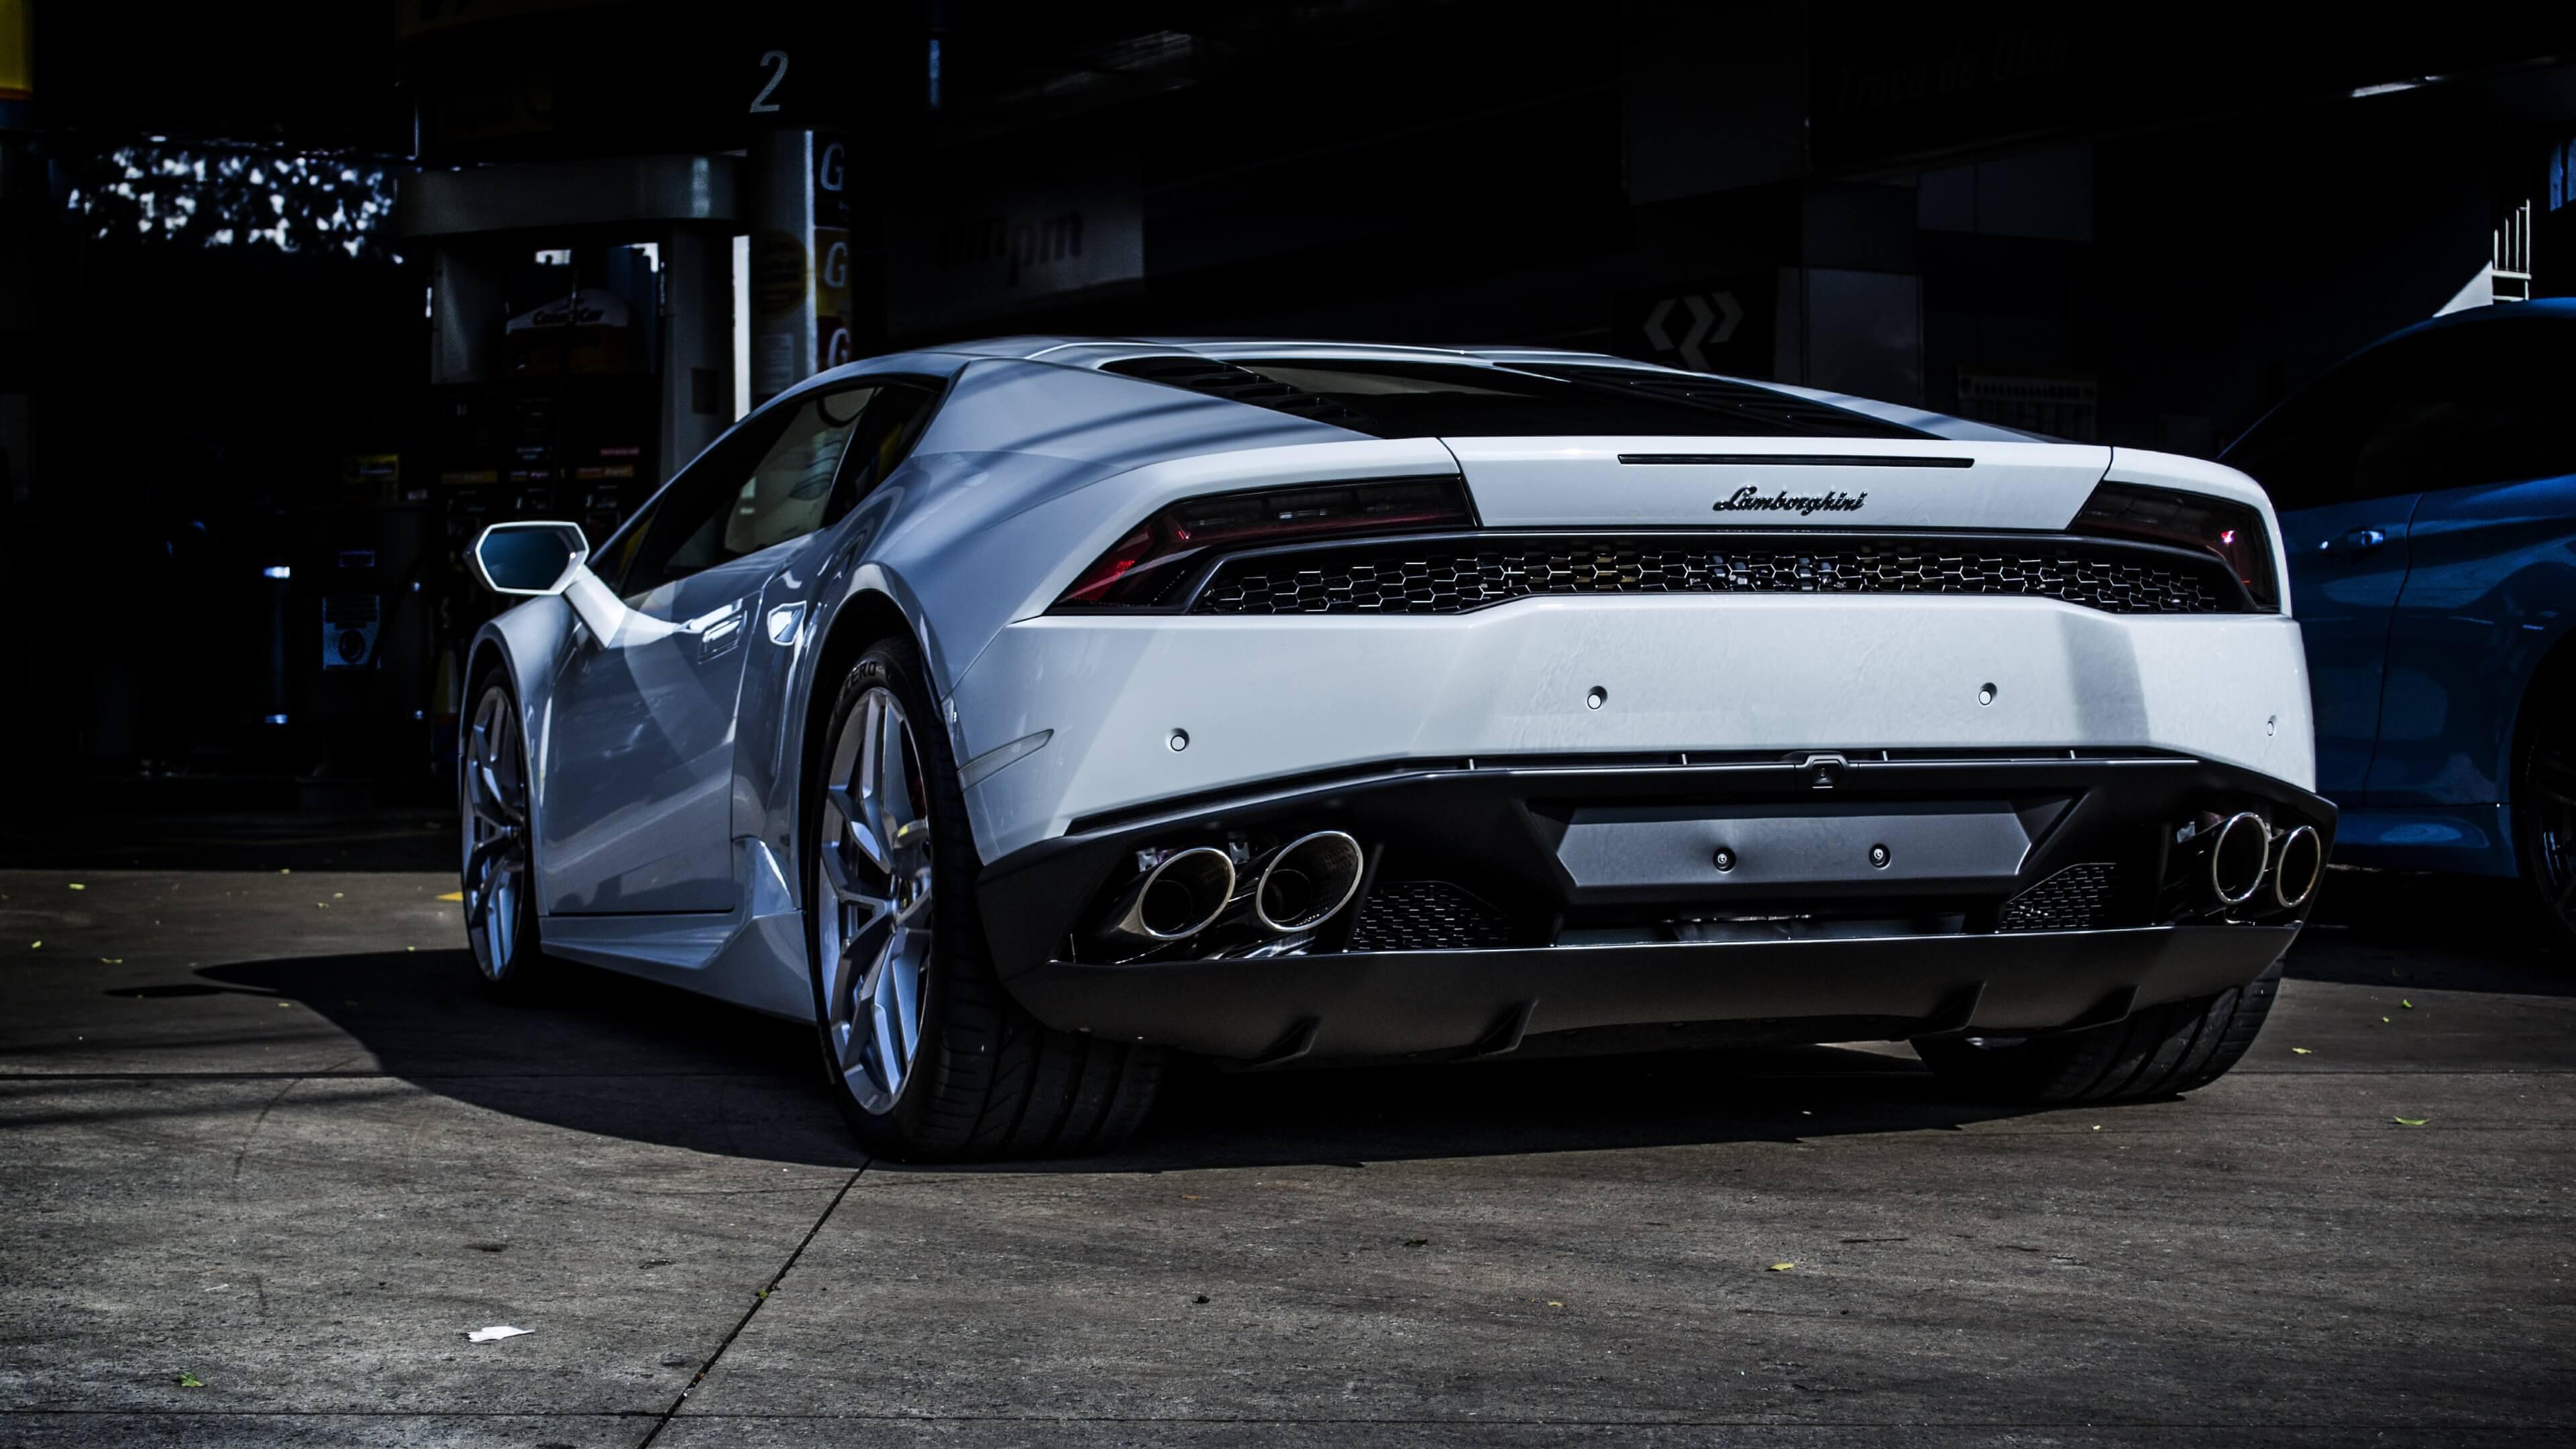 Free download Lamborghini Aventador White wallpaper [1280x853] for your